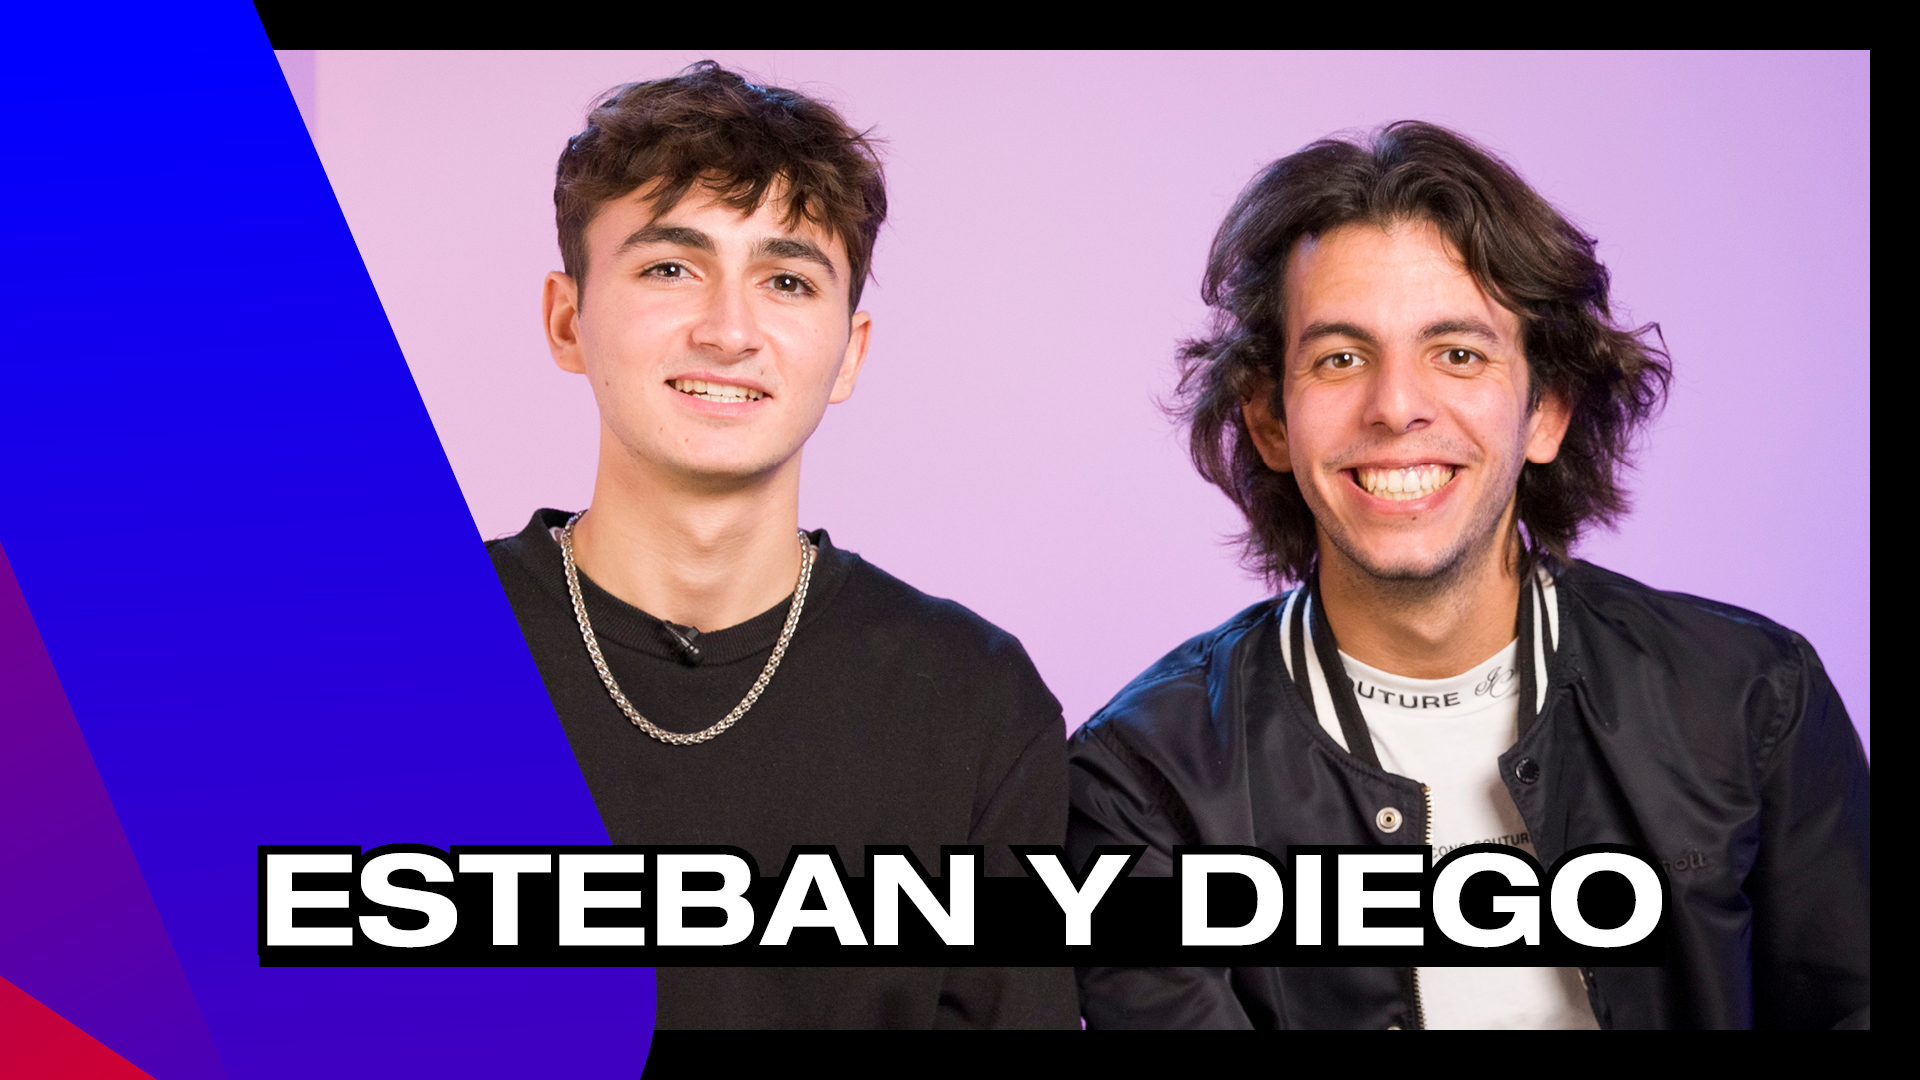 Esteban y Diego, un duo de chanteurs engagésEsteban y Diego, un duo de chanteurs engagés